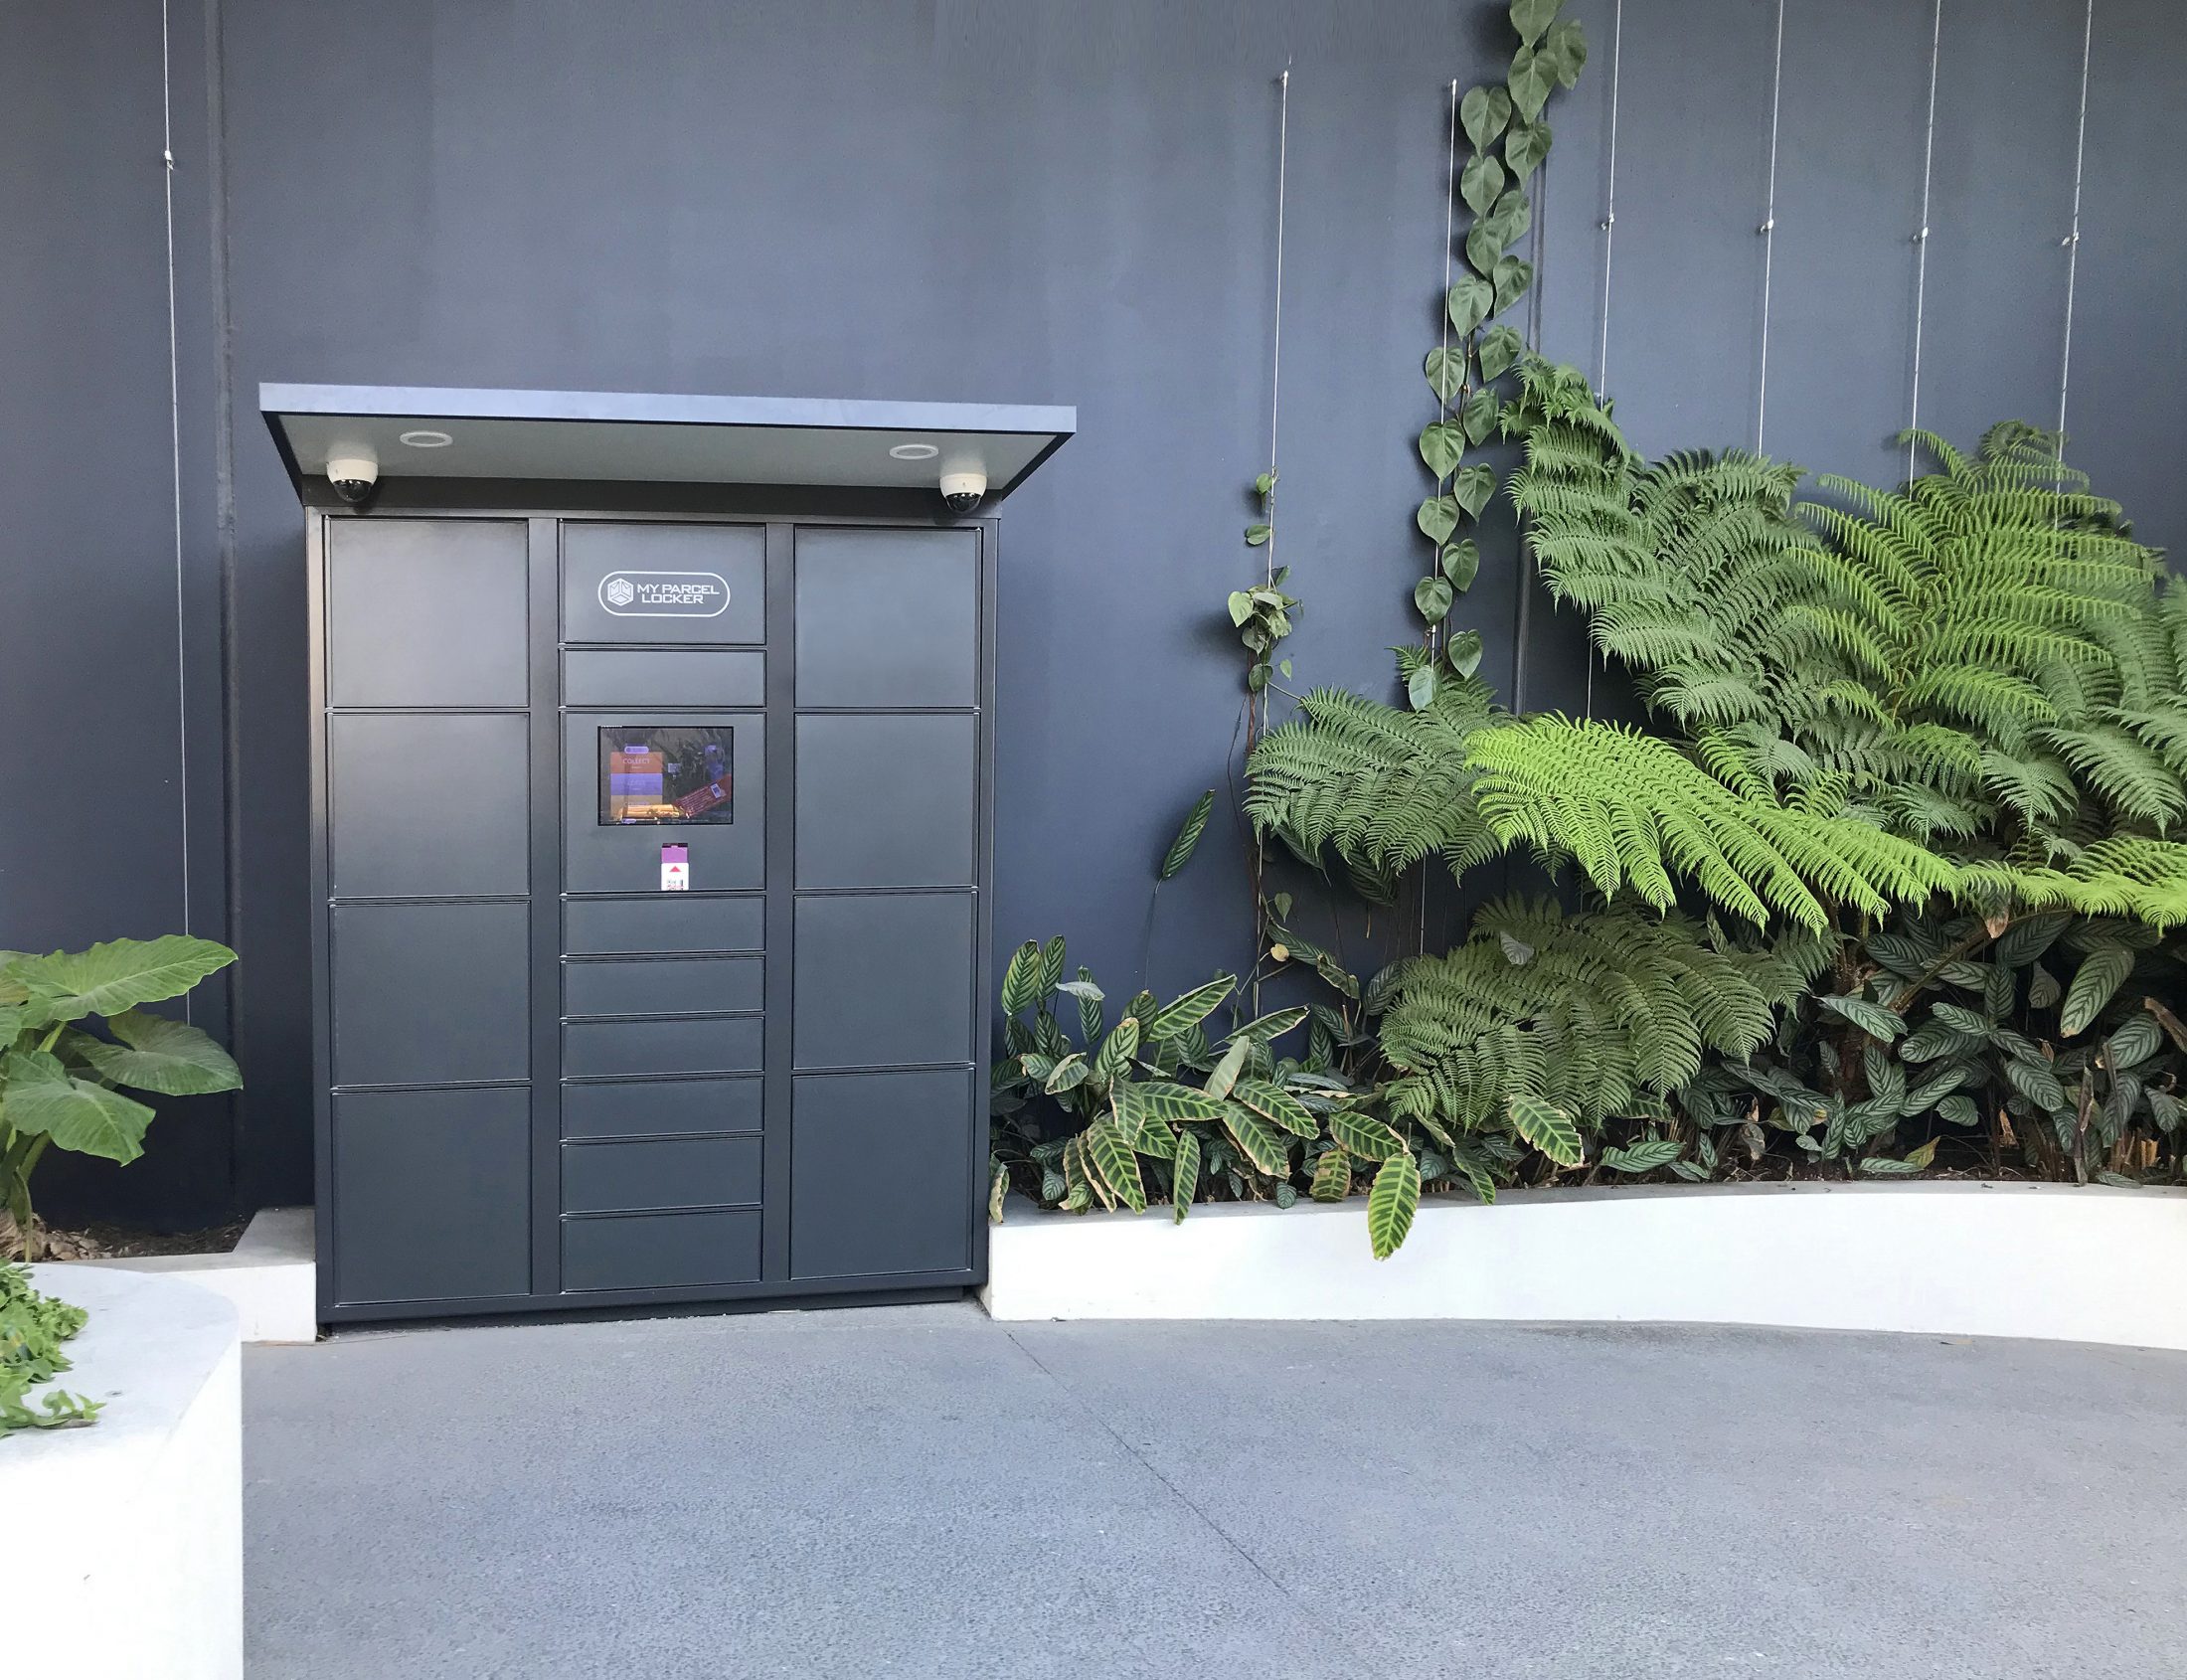 Understanding Outdoor Parcel Lockers